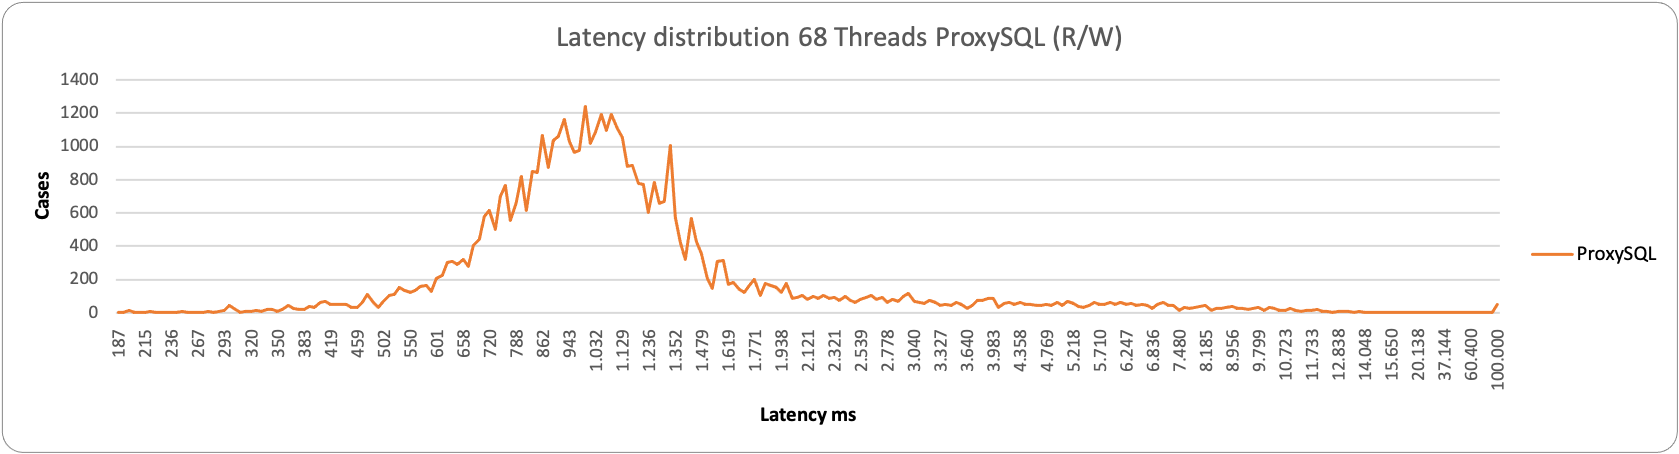 latency68 1node proxy rw